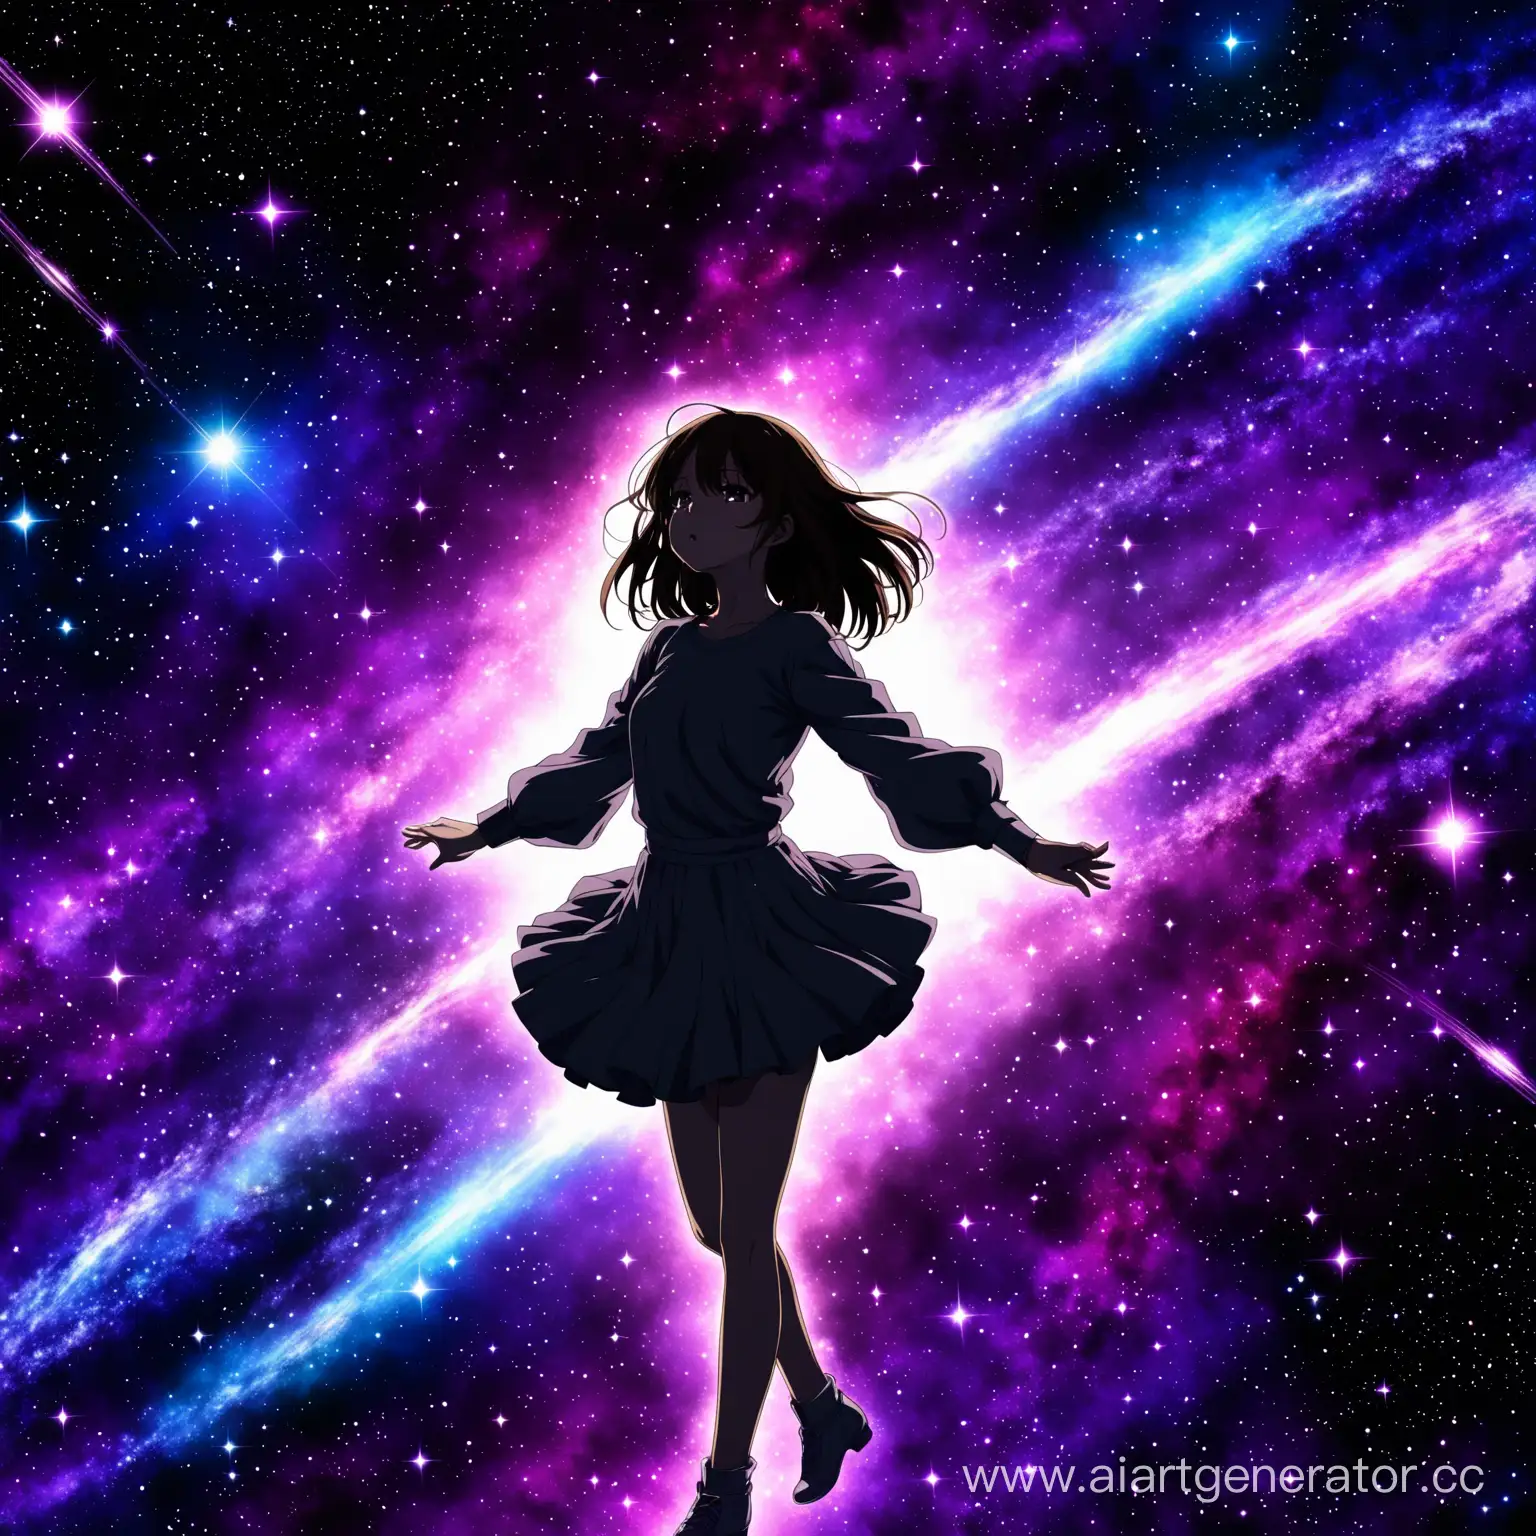 Аниме девочка танец  и ее засасывает галактика. Все темное